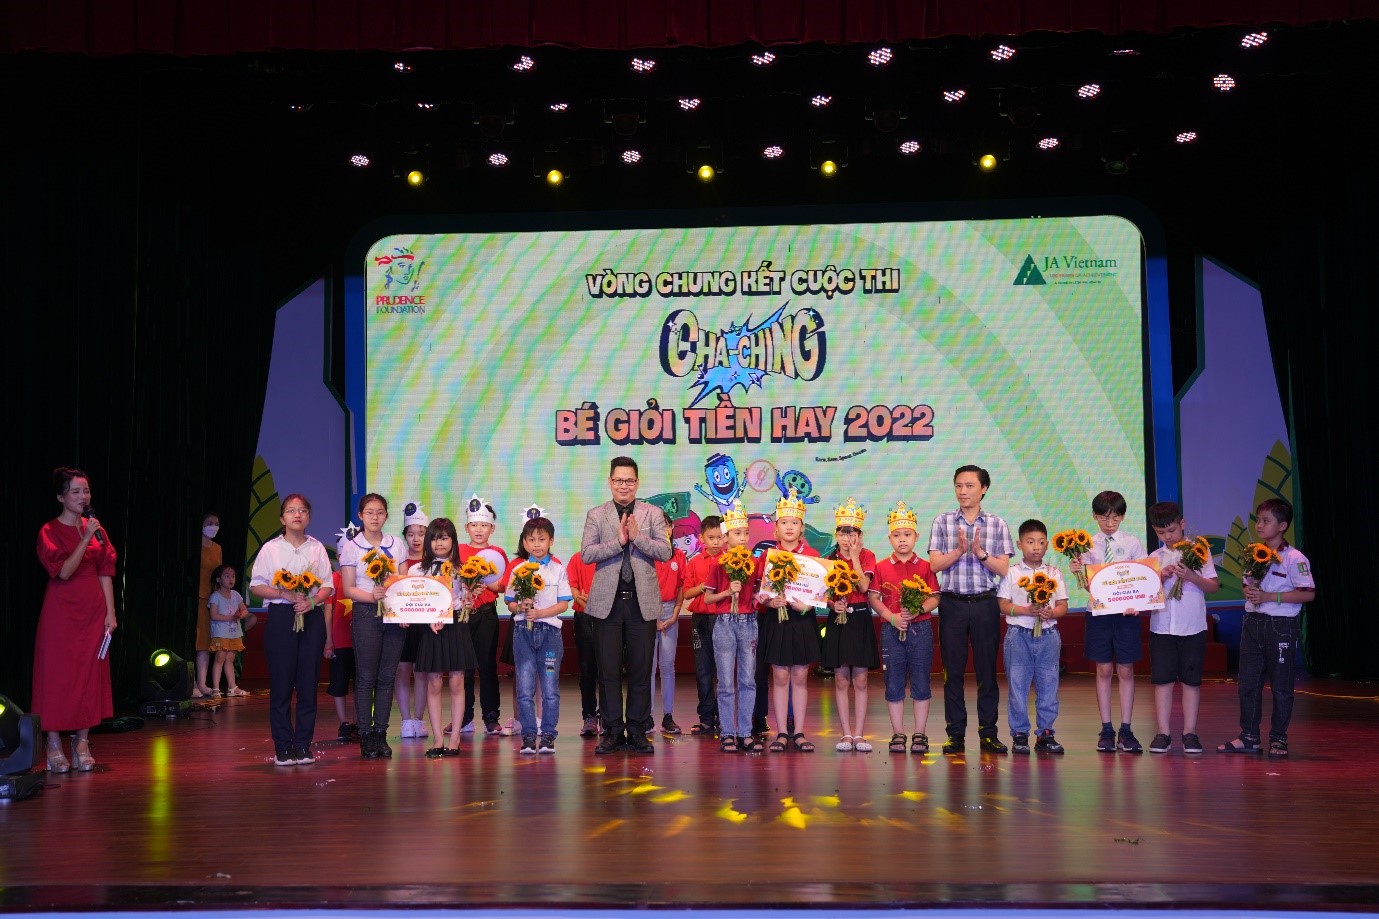 เทศกาล Cha-Ching ที่มีชีวิตชีวา สอนทักษะการจัดการเงินให้เด็กๆ เวียดนาม